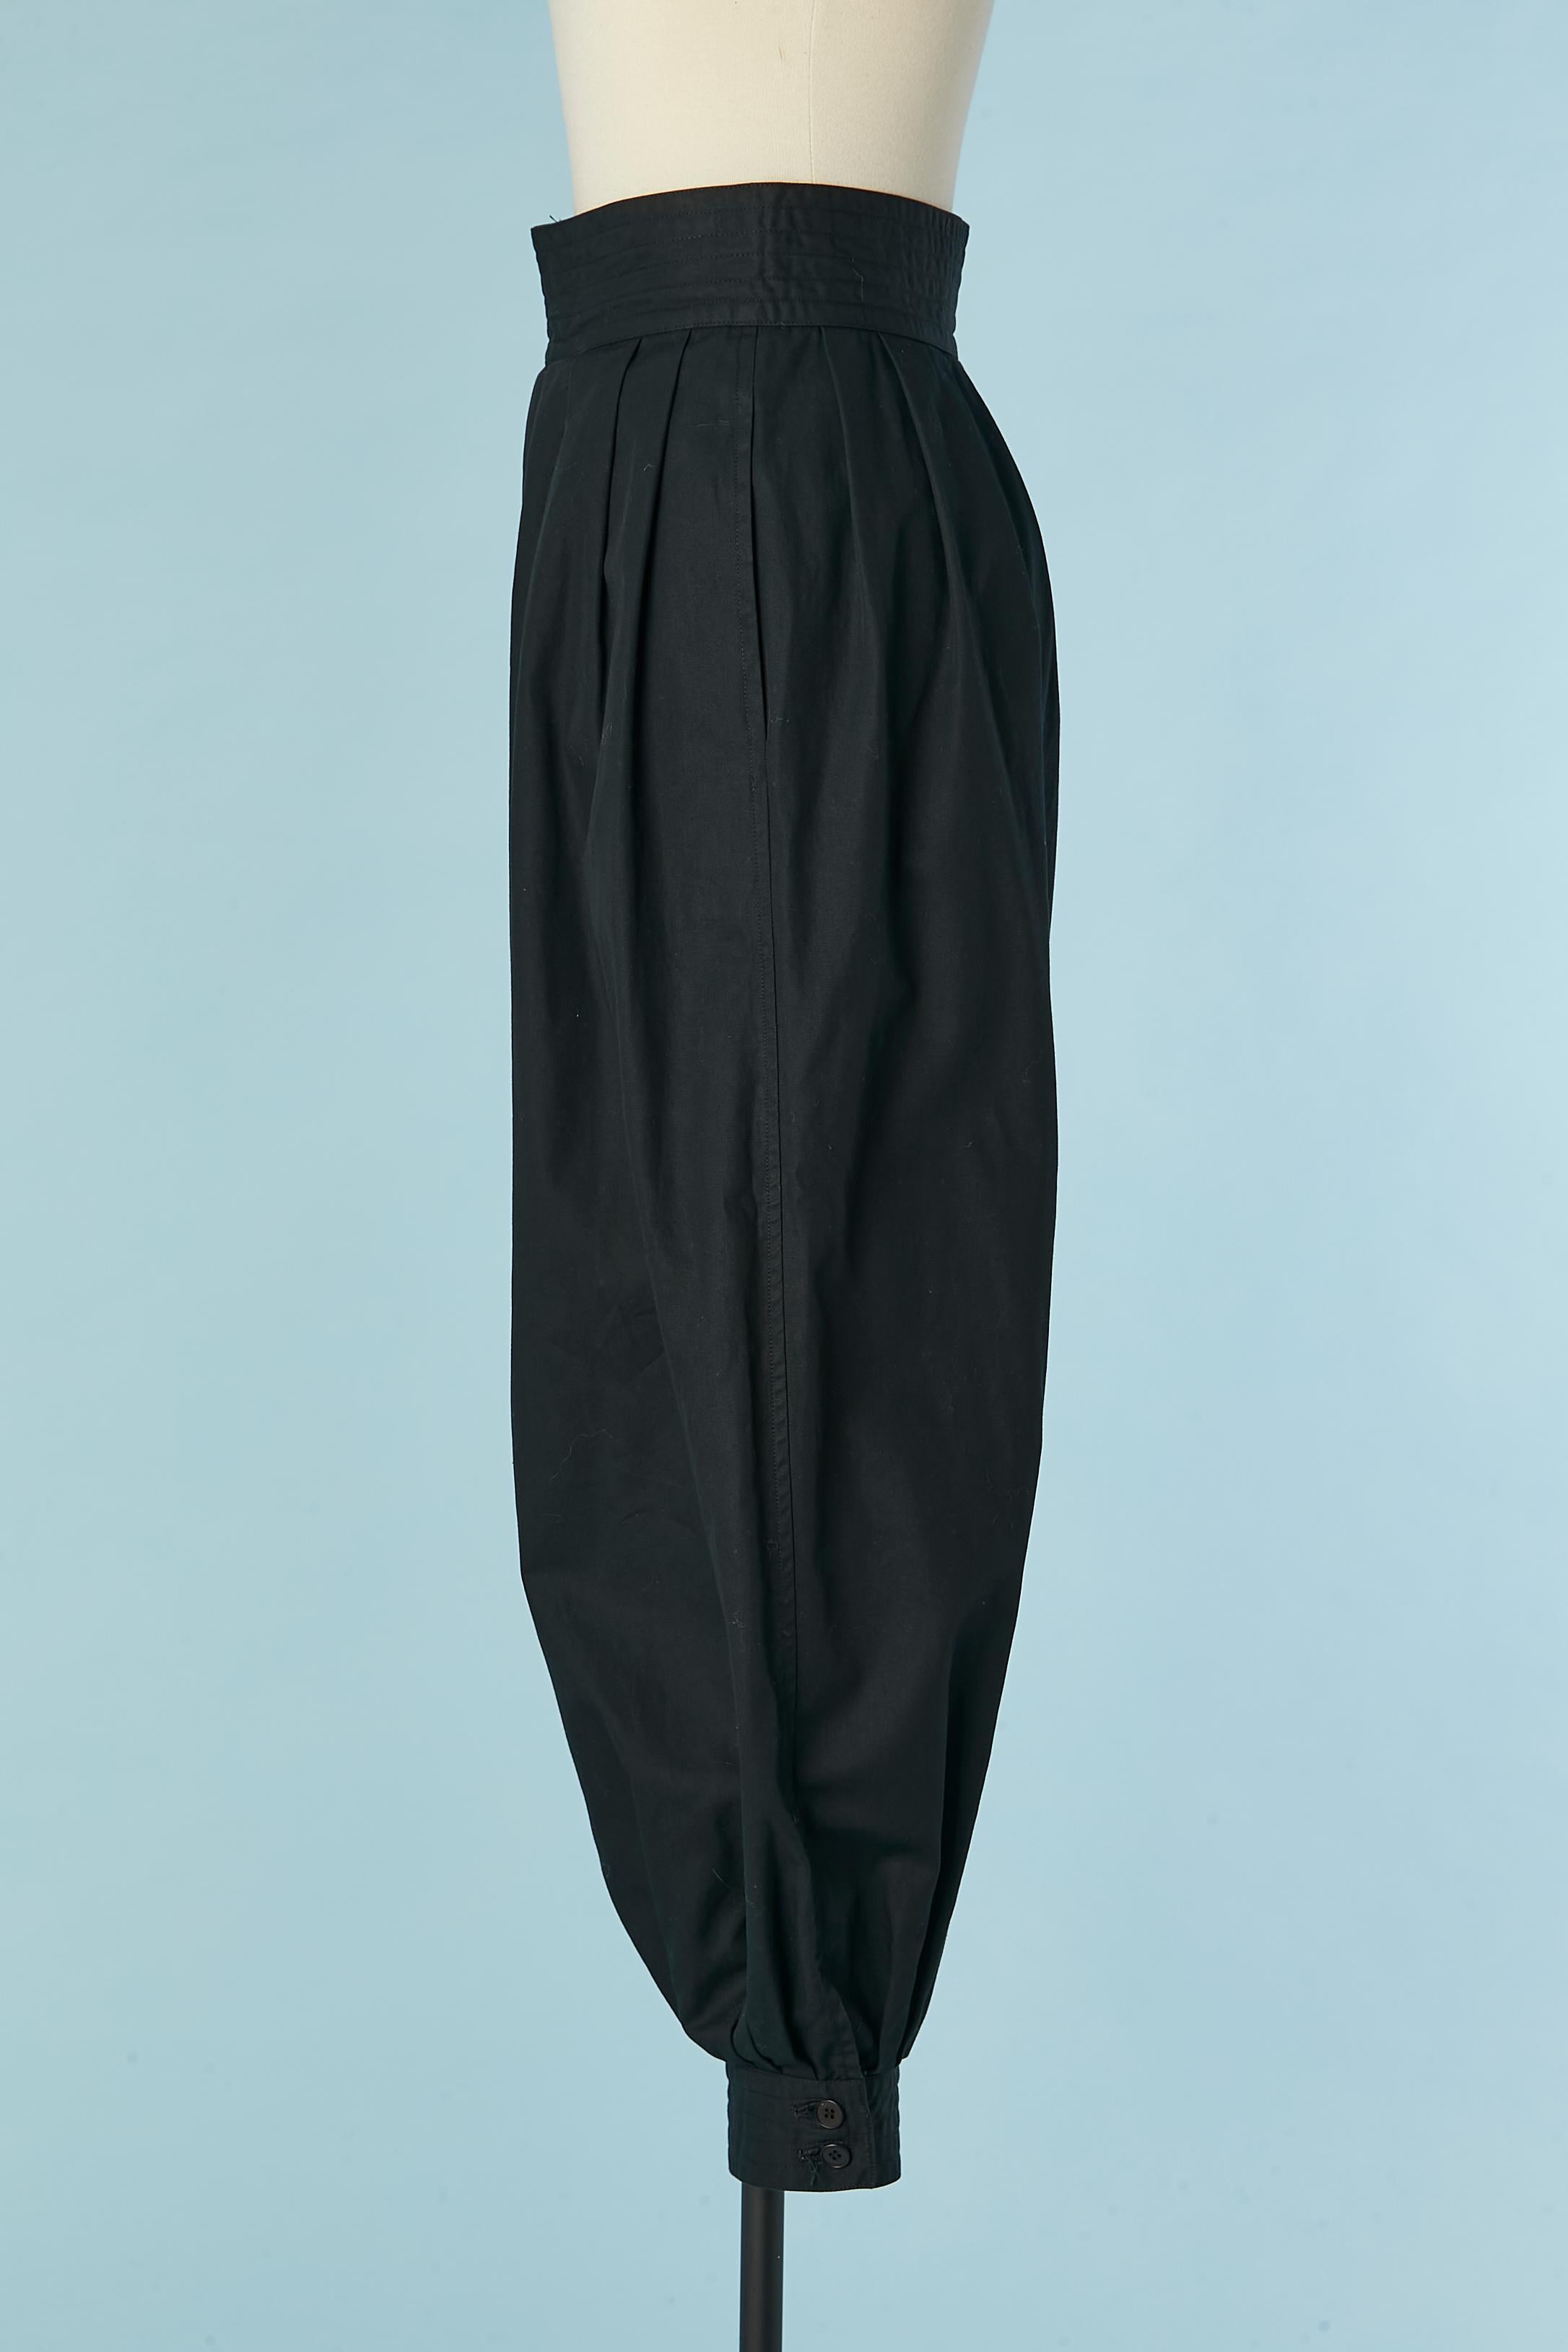 Iconic sarouel trouser in black cotton Saint Laurent Rive Gauche 1976 In Excellent Condition For Sale In Saint-Ouen-Sur-Seine, FR